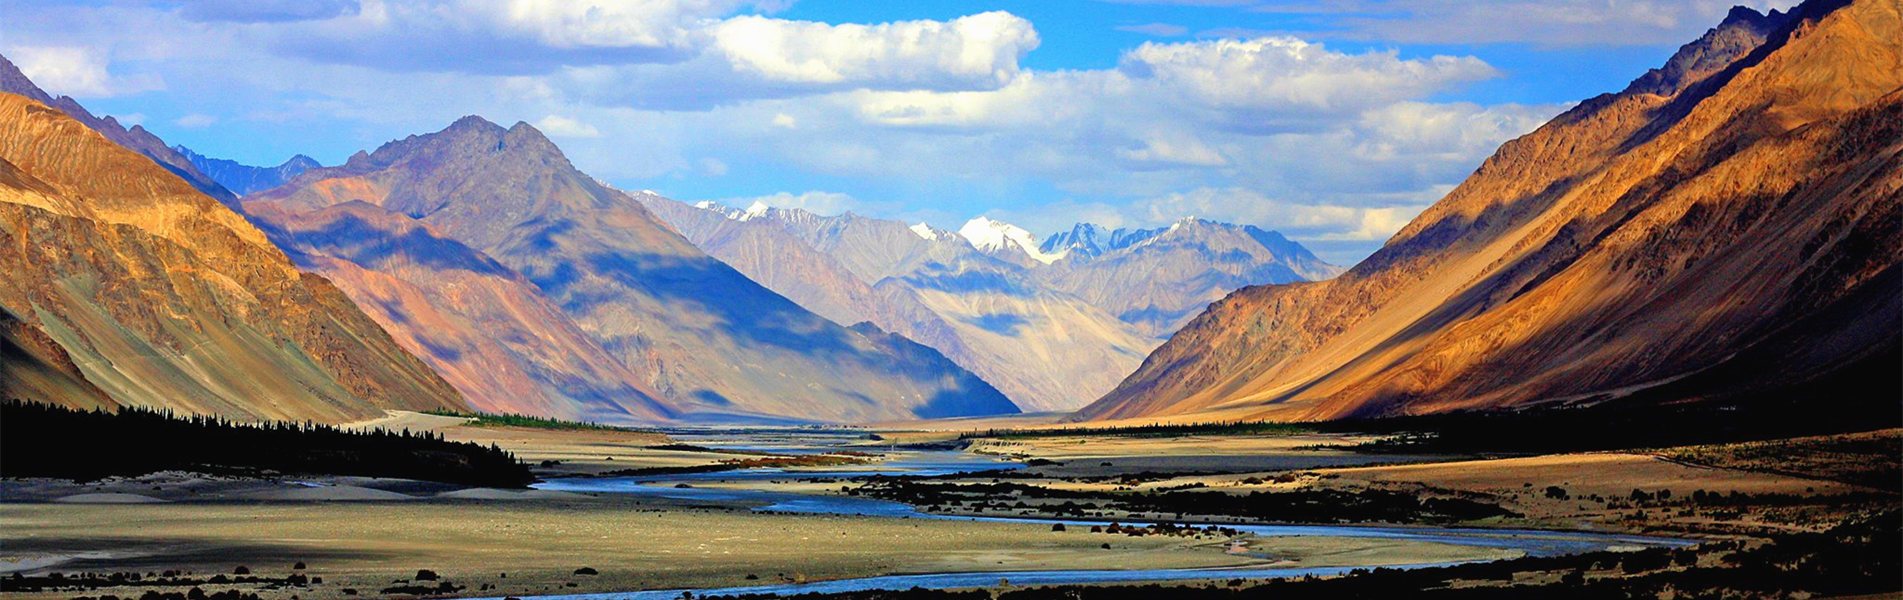 Zanskar River Valley